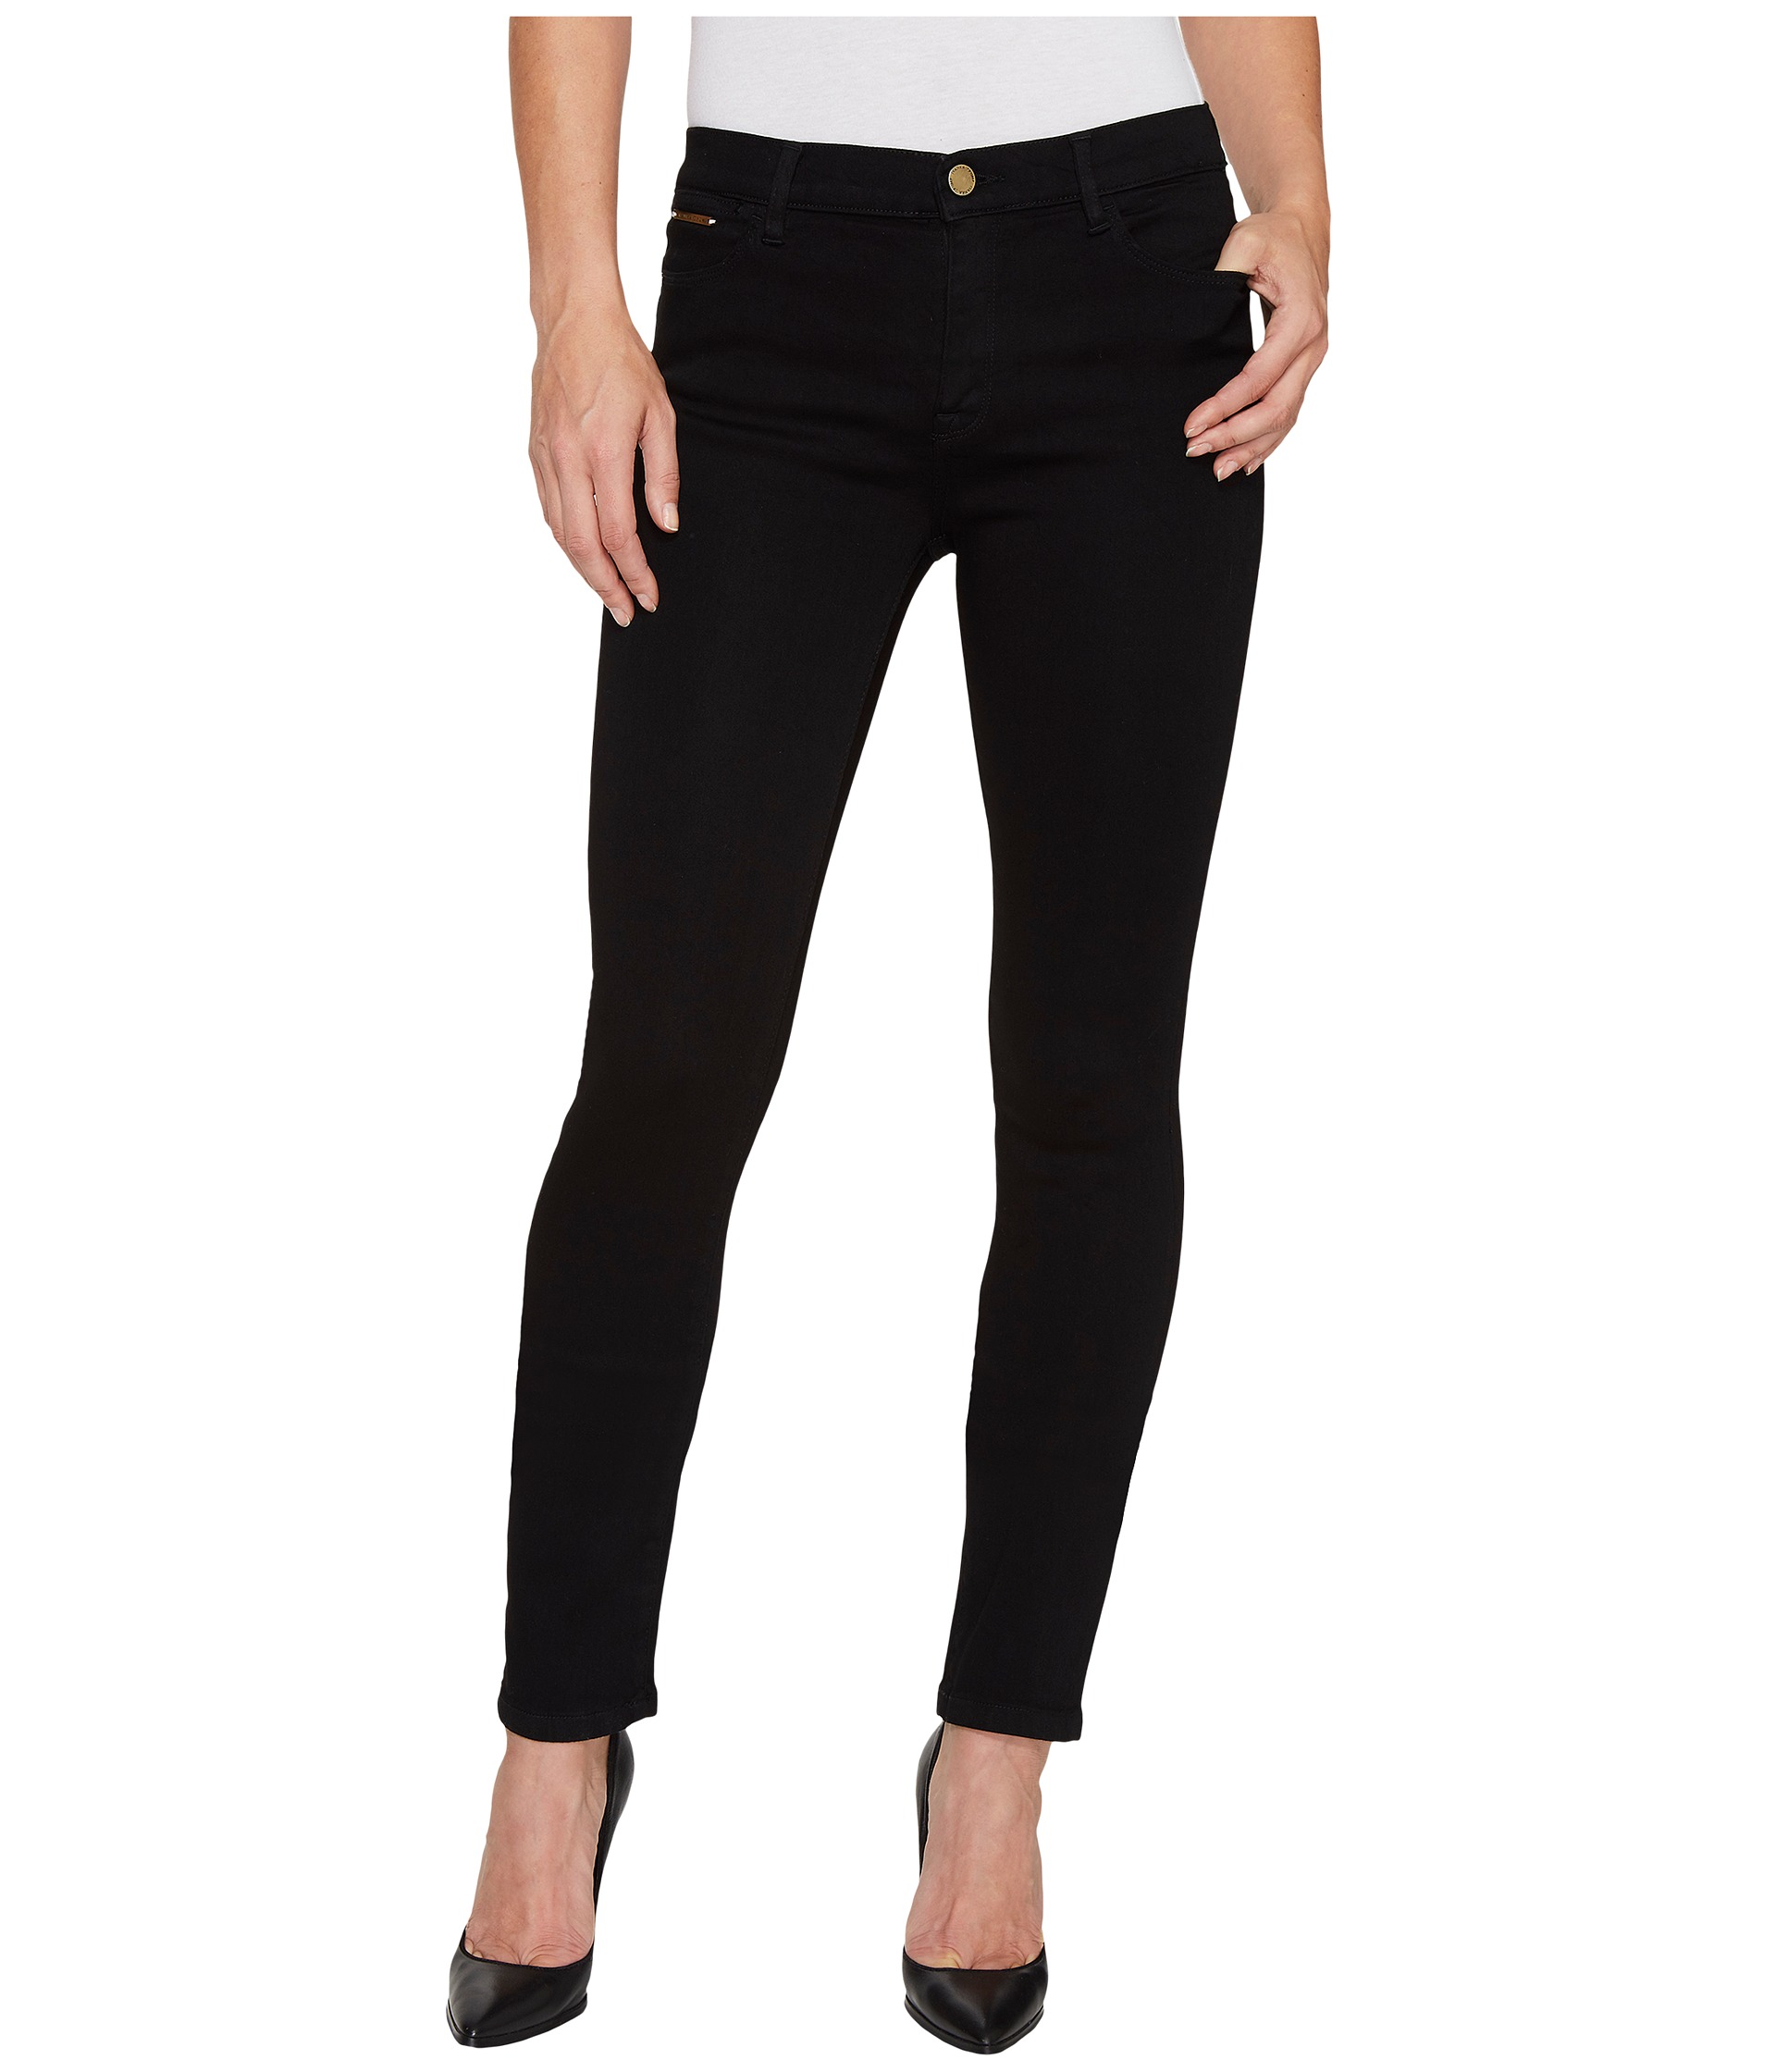 Ivanka Trump Denim Skinny Jeans in Black at Zappos.com